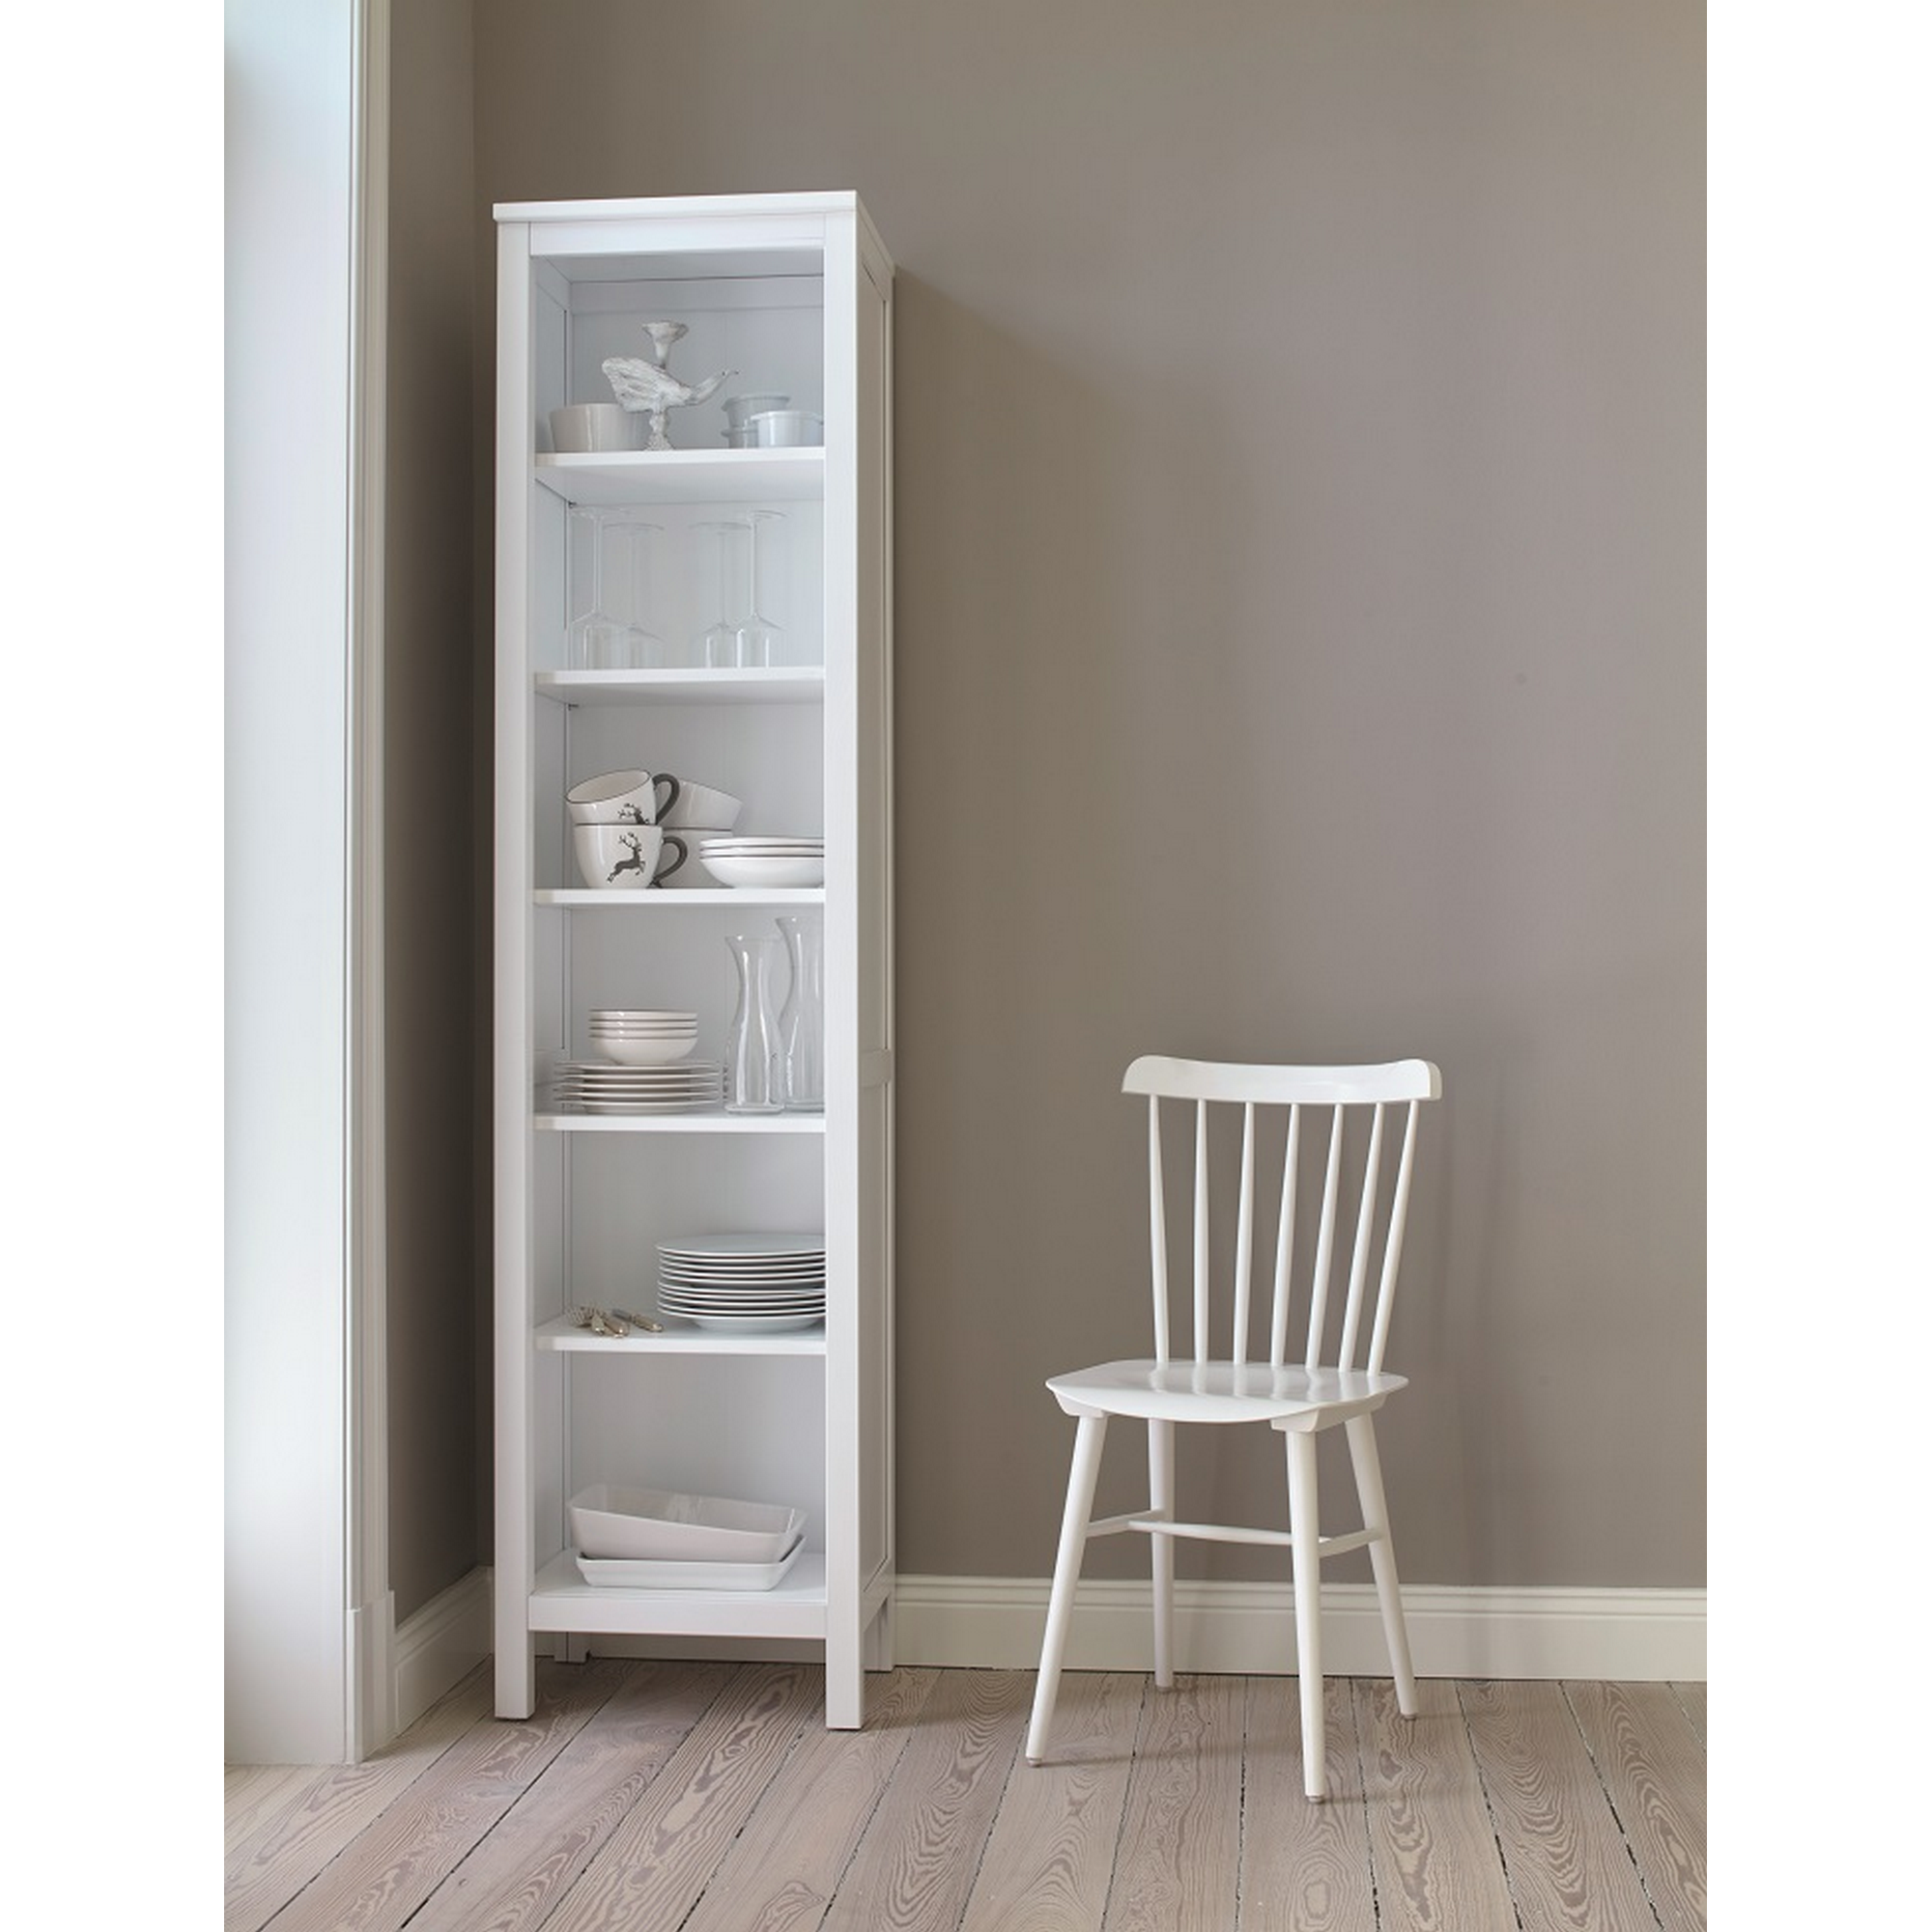 Weißlack für Möbel und Türen glänzend 2 l + product picture